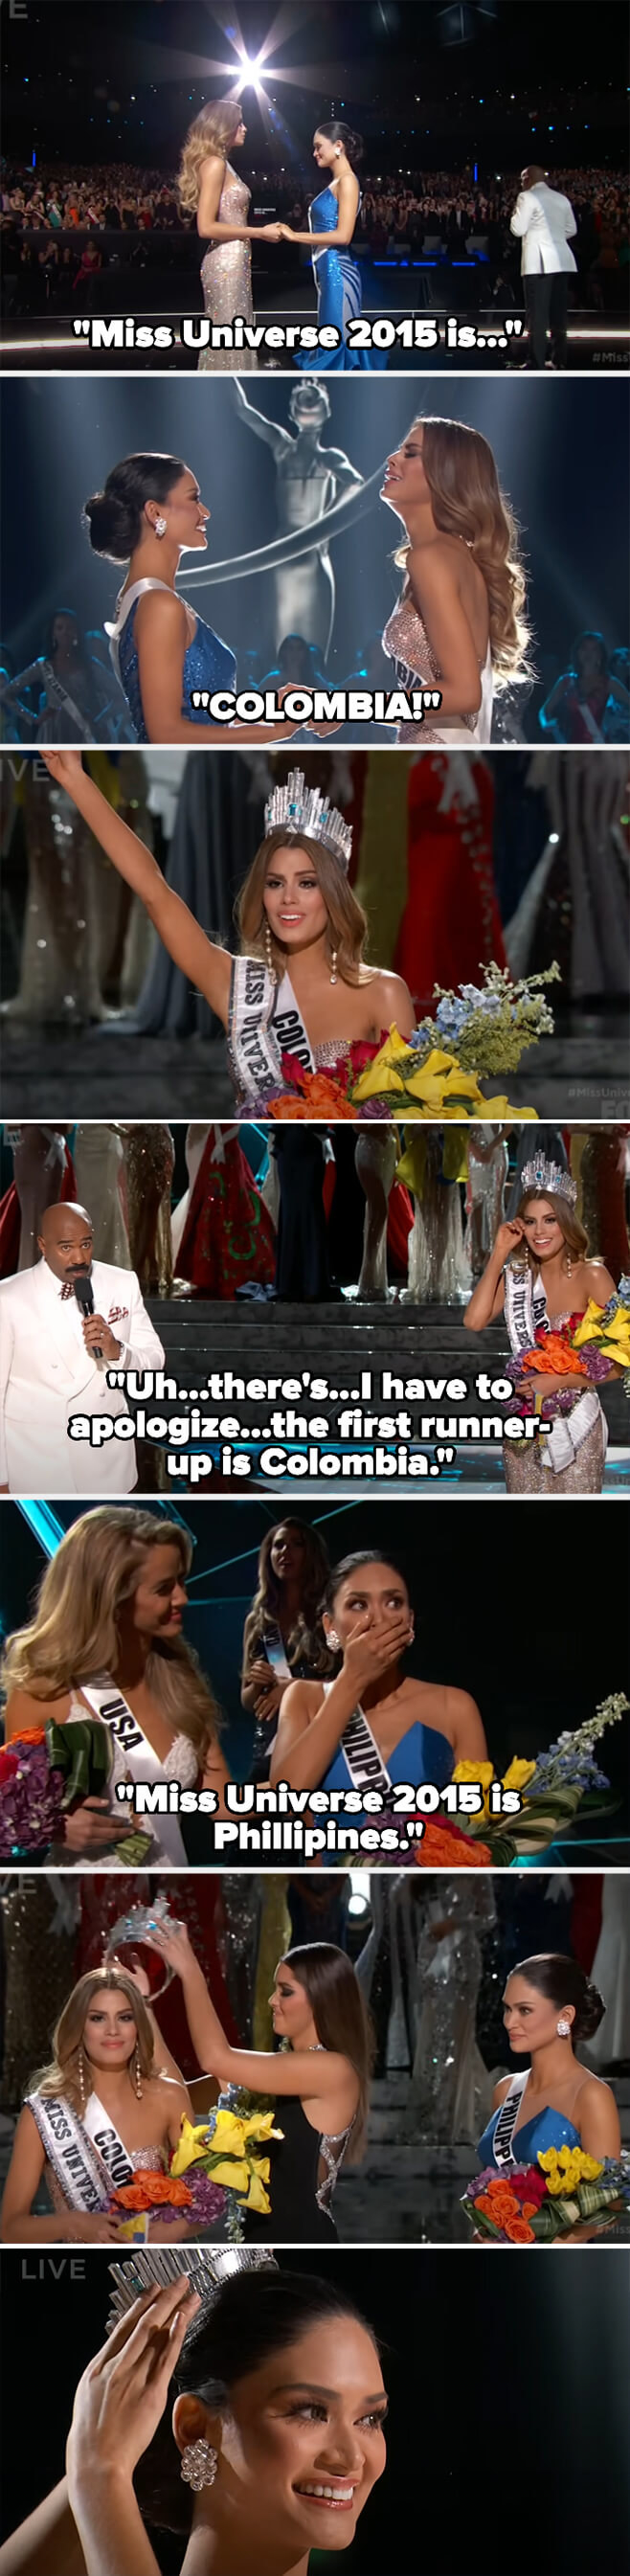 哈维宣布哥伦比亚作为胜利者,然后道歉并宣布环球小姐是菲律宾